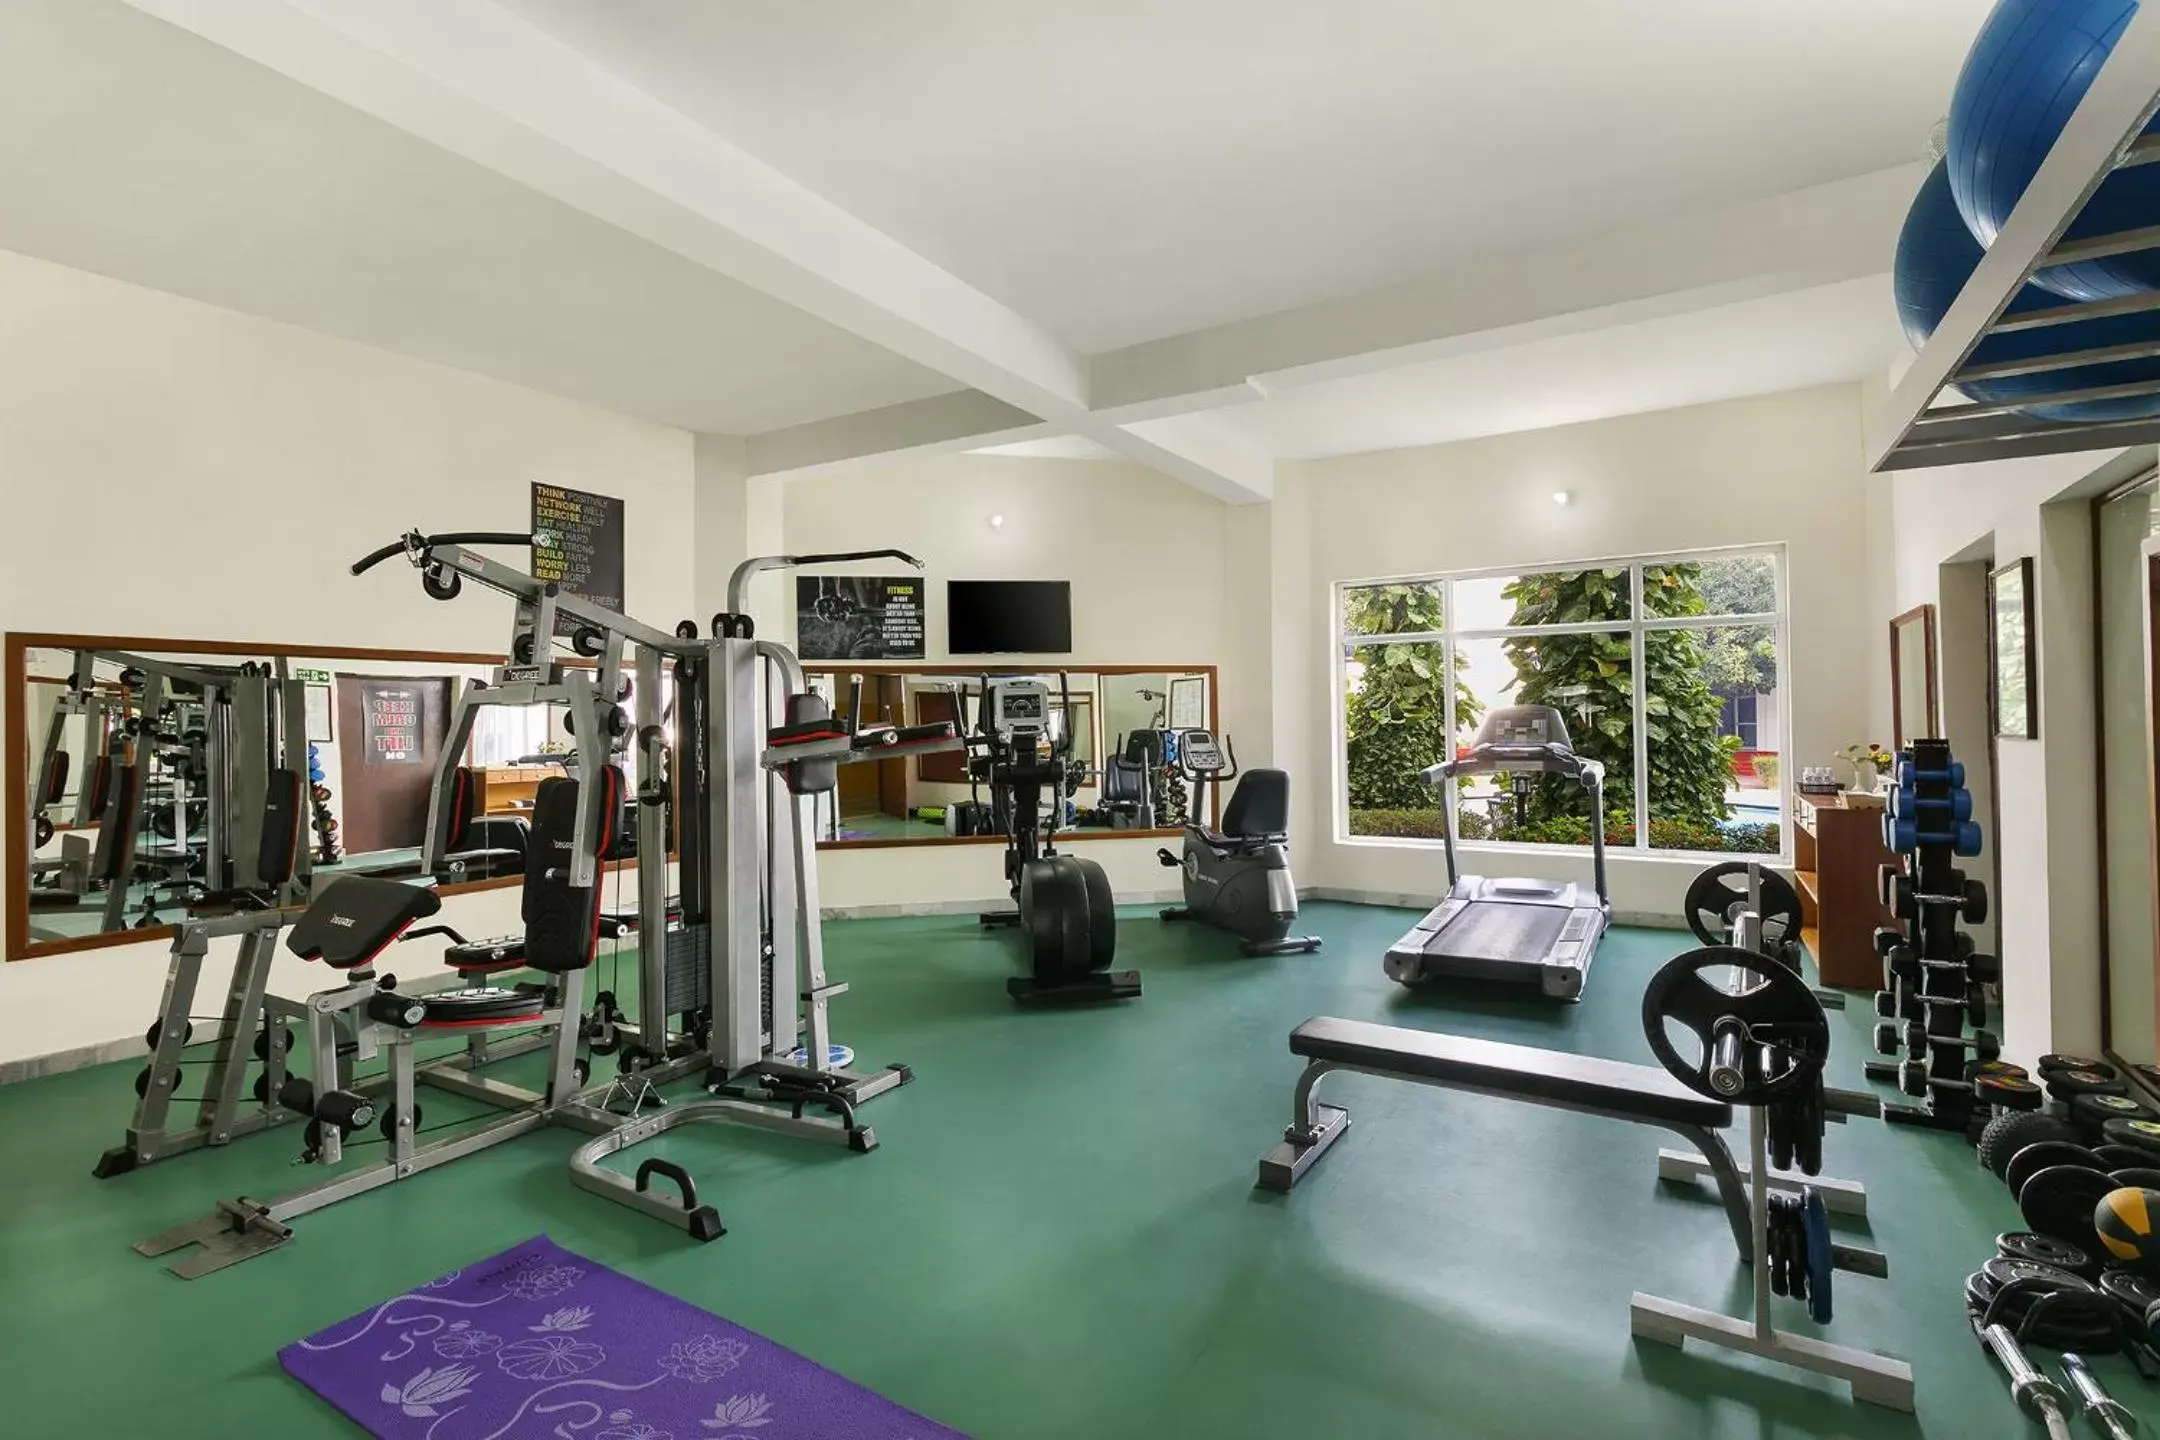 Fitness centre/facilities, Fitness Center/Facilities in Ramada Khajuraho